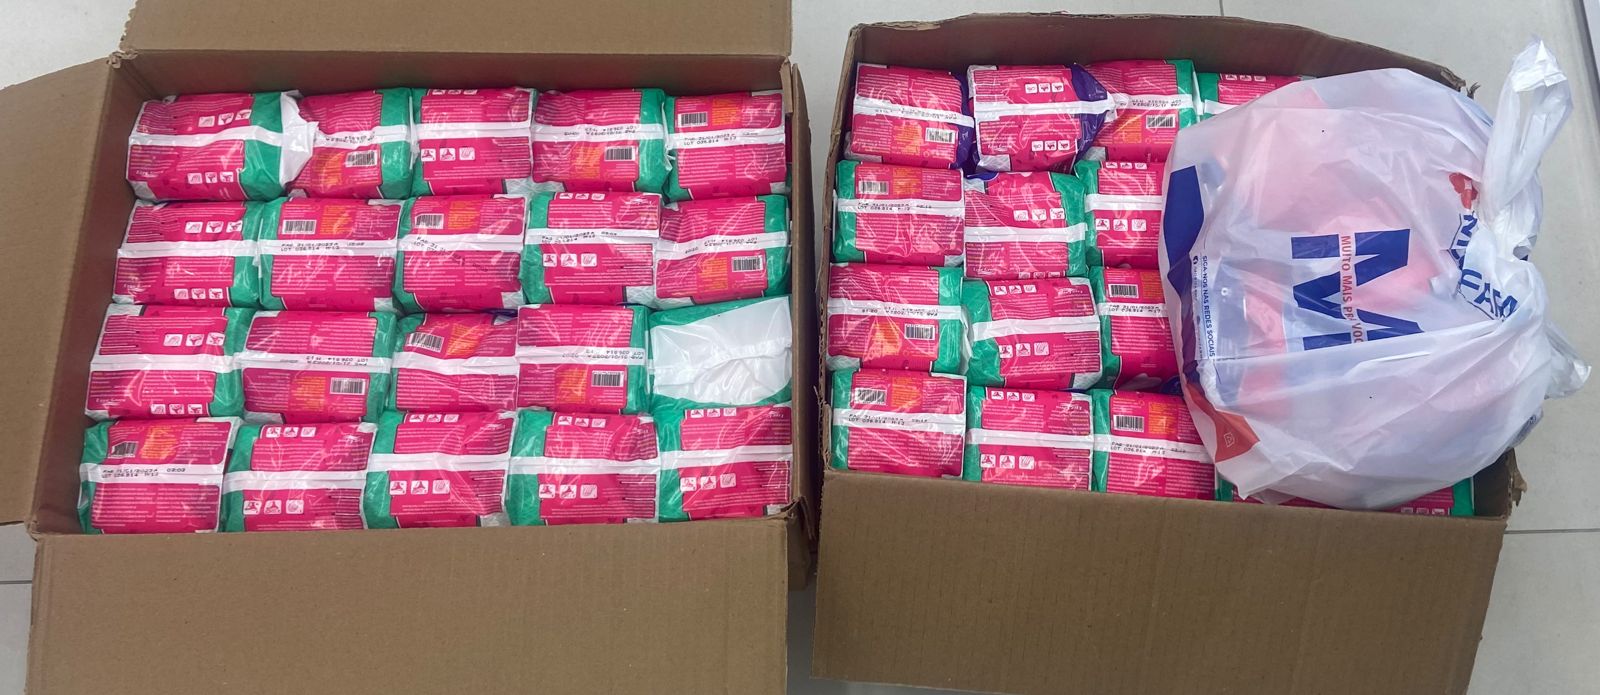 Foto: absorventes higiênicos arrecadados pelos calouros de Direito - Uniandrade.